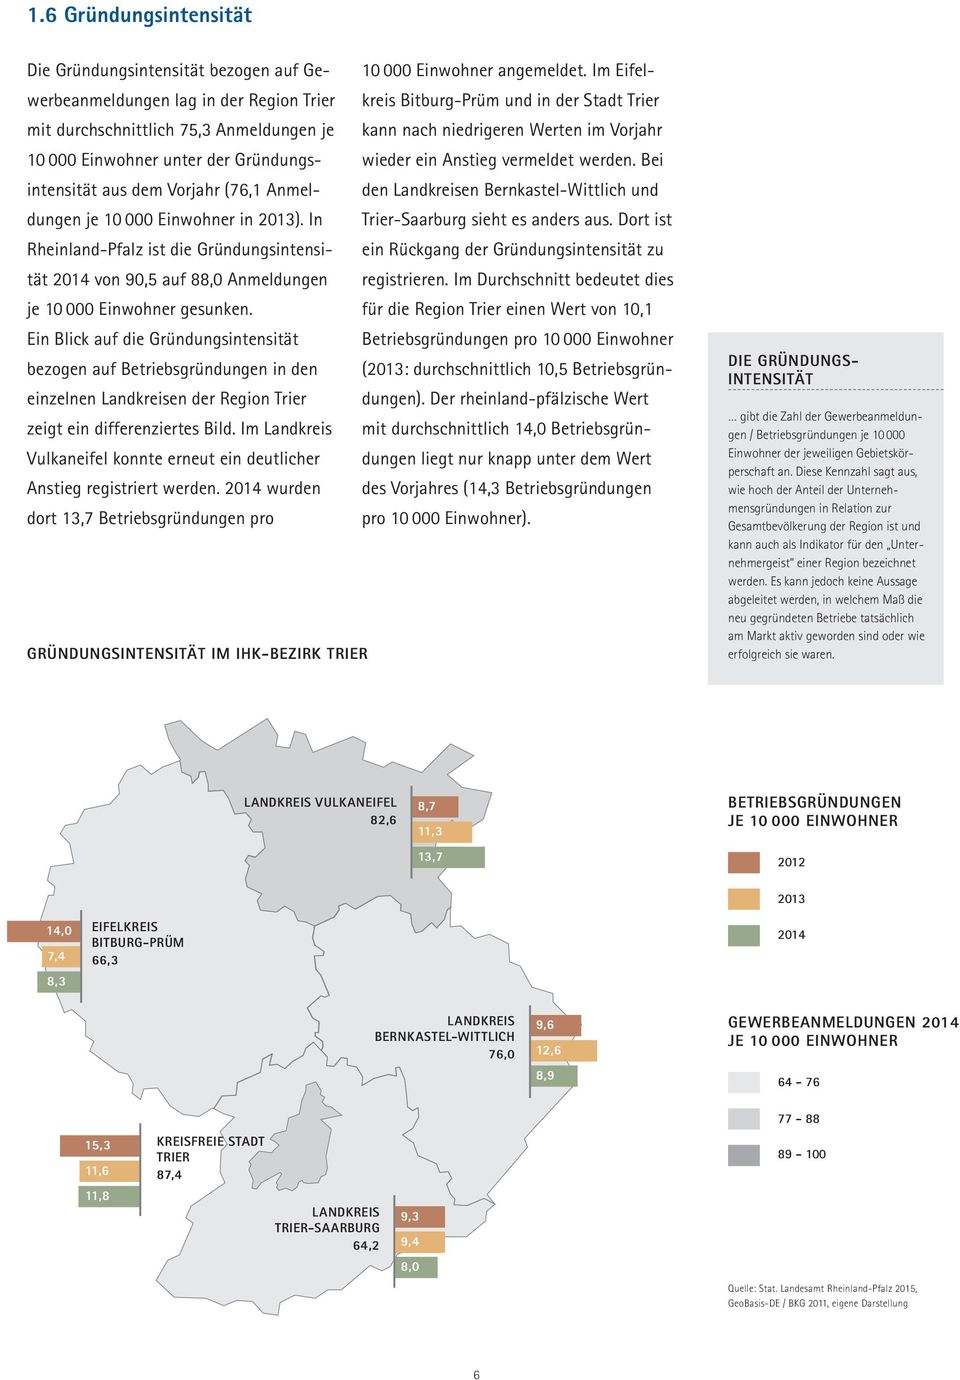 Bernkastel-Wittlich und wieder ein Anstieg vermeldet werden. Bei dungen je 10 000 Einwohner in 2013). In Trier-Saarburg sieht es anders aus.